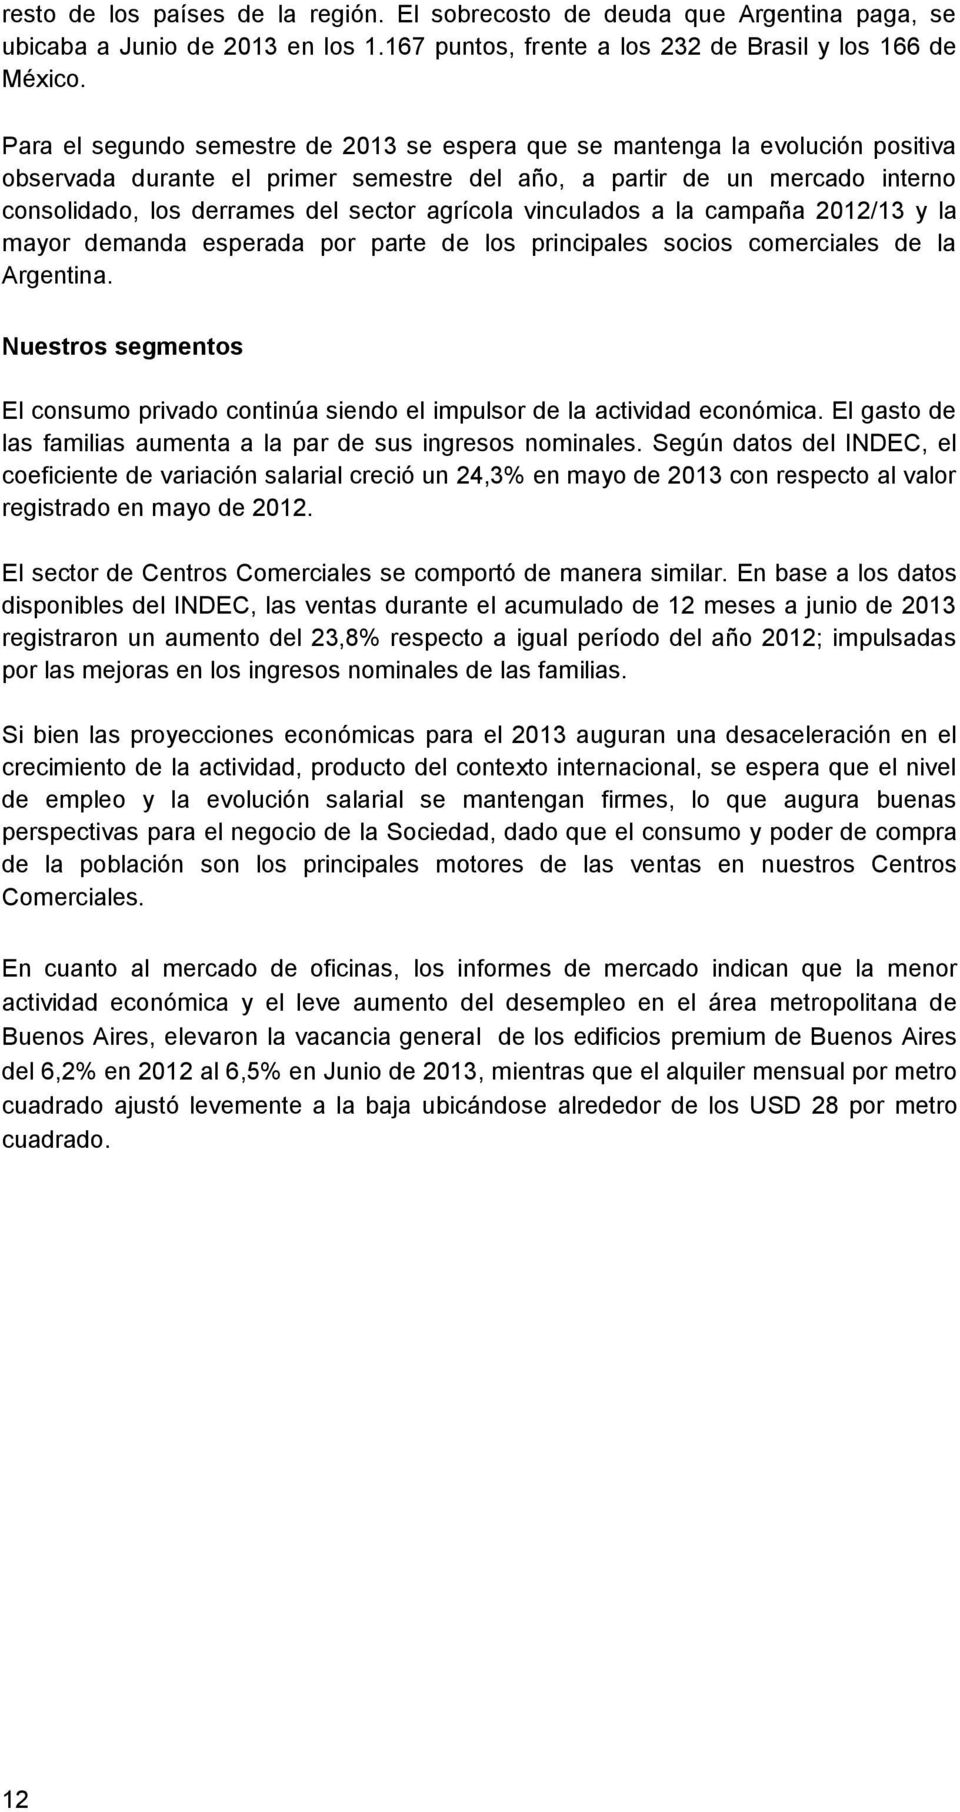 agrícola vinculados a la campaña 2012/13 y la mayor demanda esperada por parte de los principales socios comerciales de la Argentina.